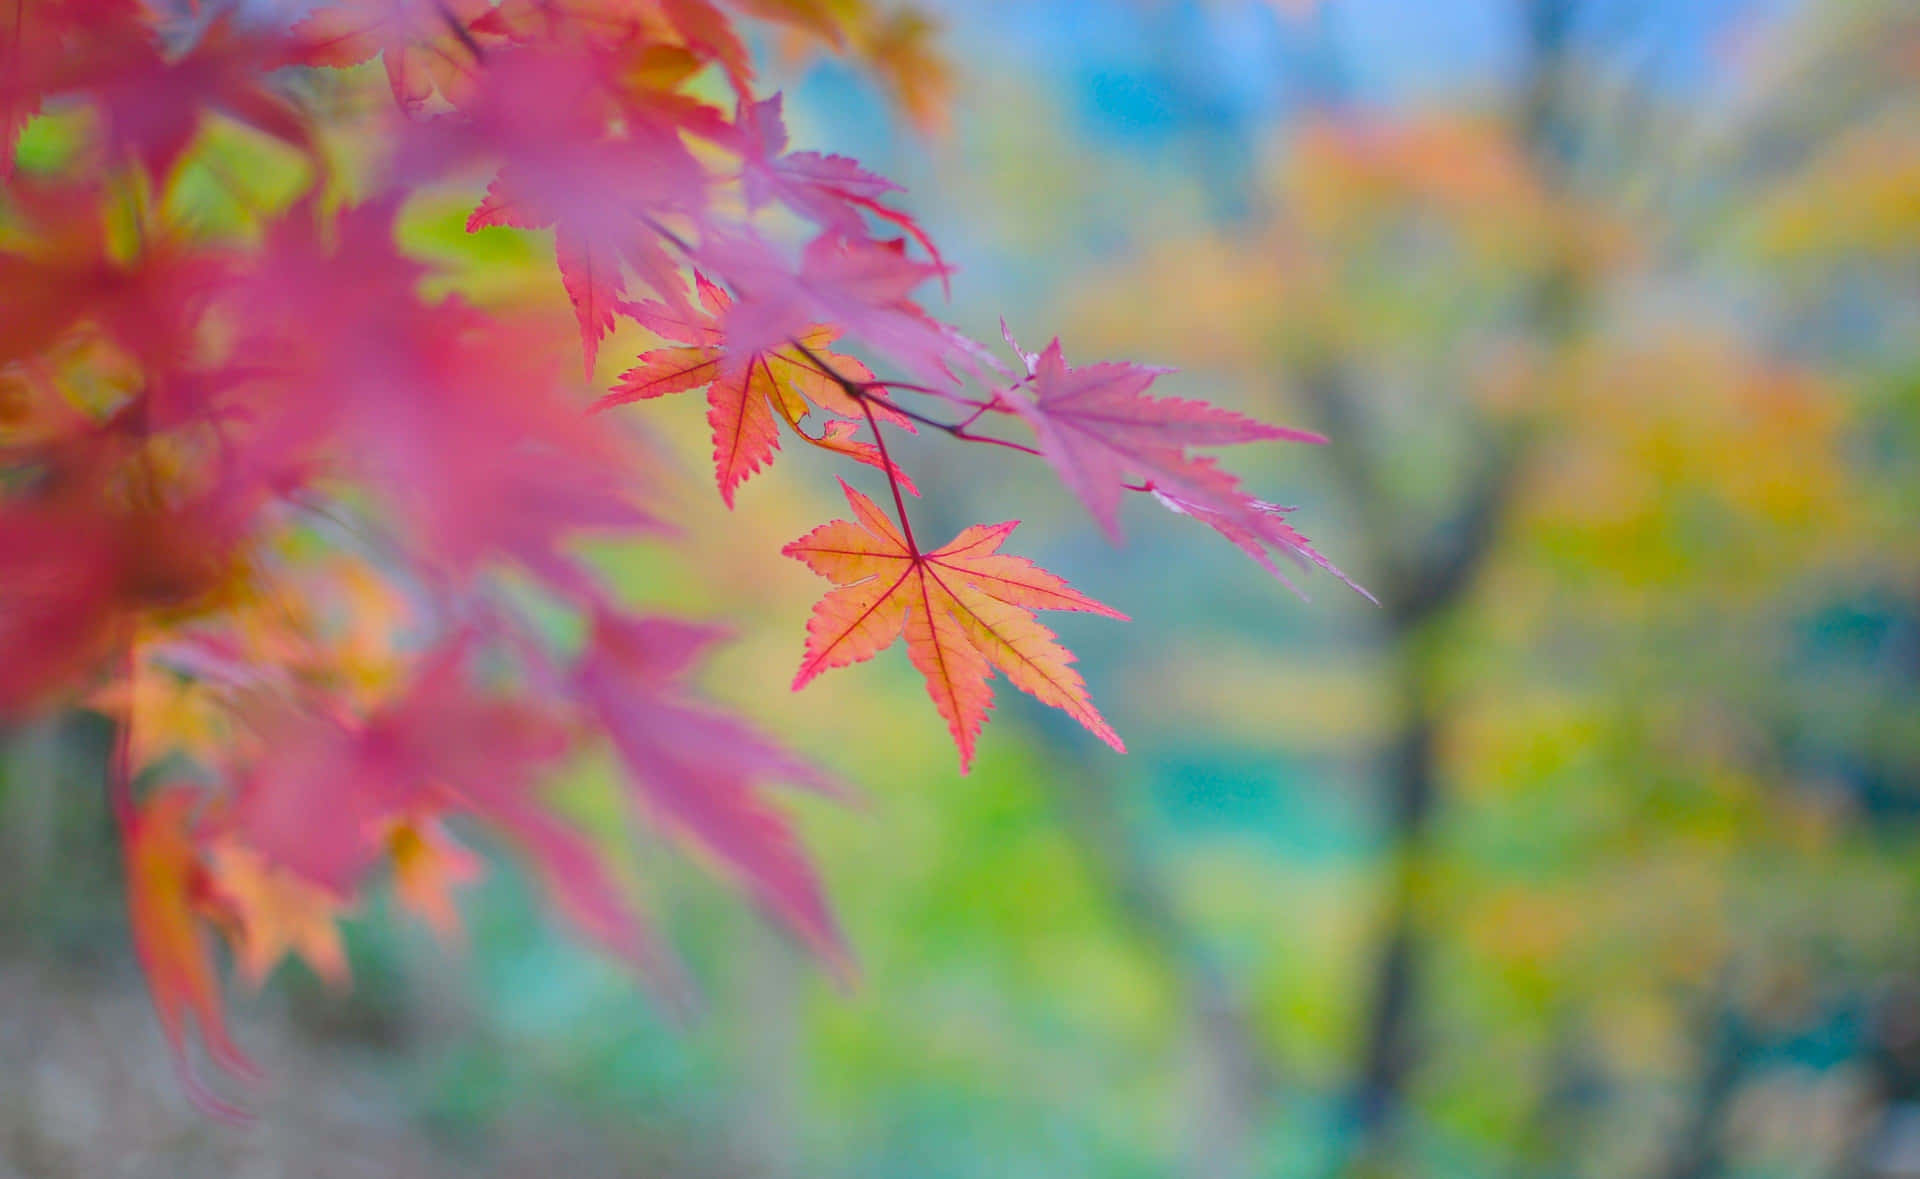 Caption: Enchanting Autumn Landscape Wallpaper